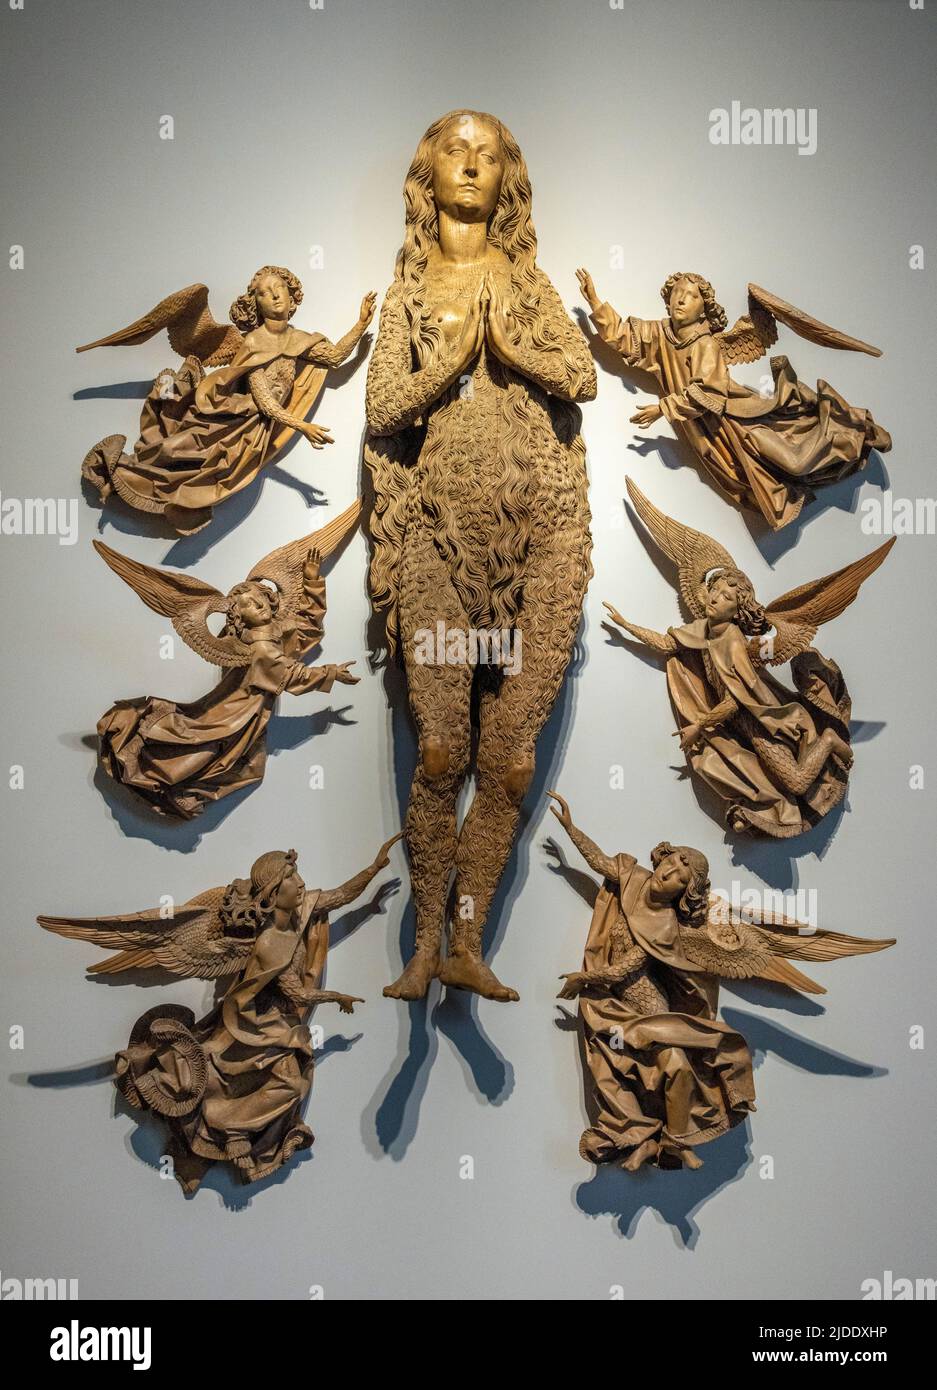 Geschnitzte Holzskulptur, Himmelfahrt der Hl. Maria Magdalena, von Tilman Riemenschneider, 1492, Bayerisches Nationalmuseum, München, Deutschland Stockfoto